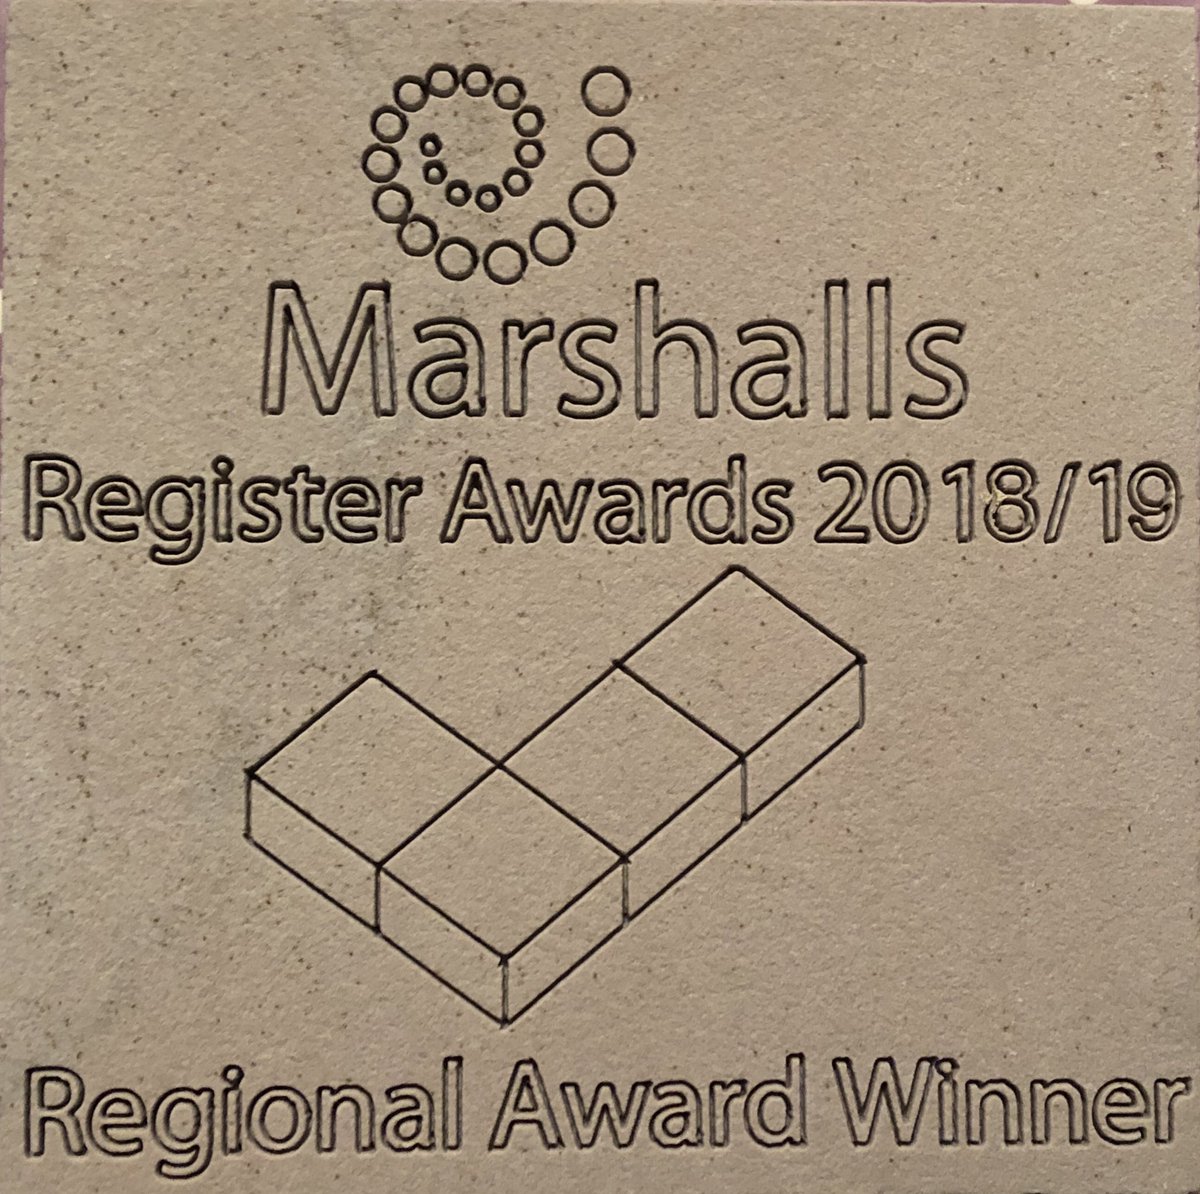 Thanks @MarshallsReg for the awards tonight not one but two! @ensatapools @ellicargardens